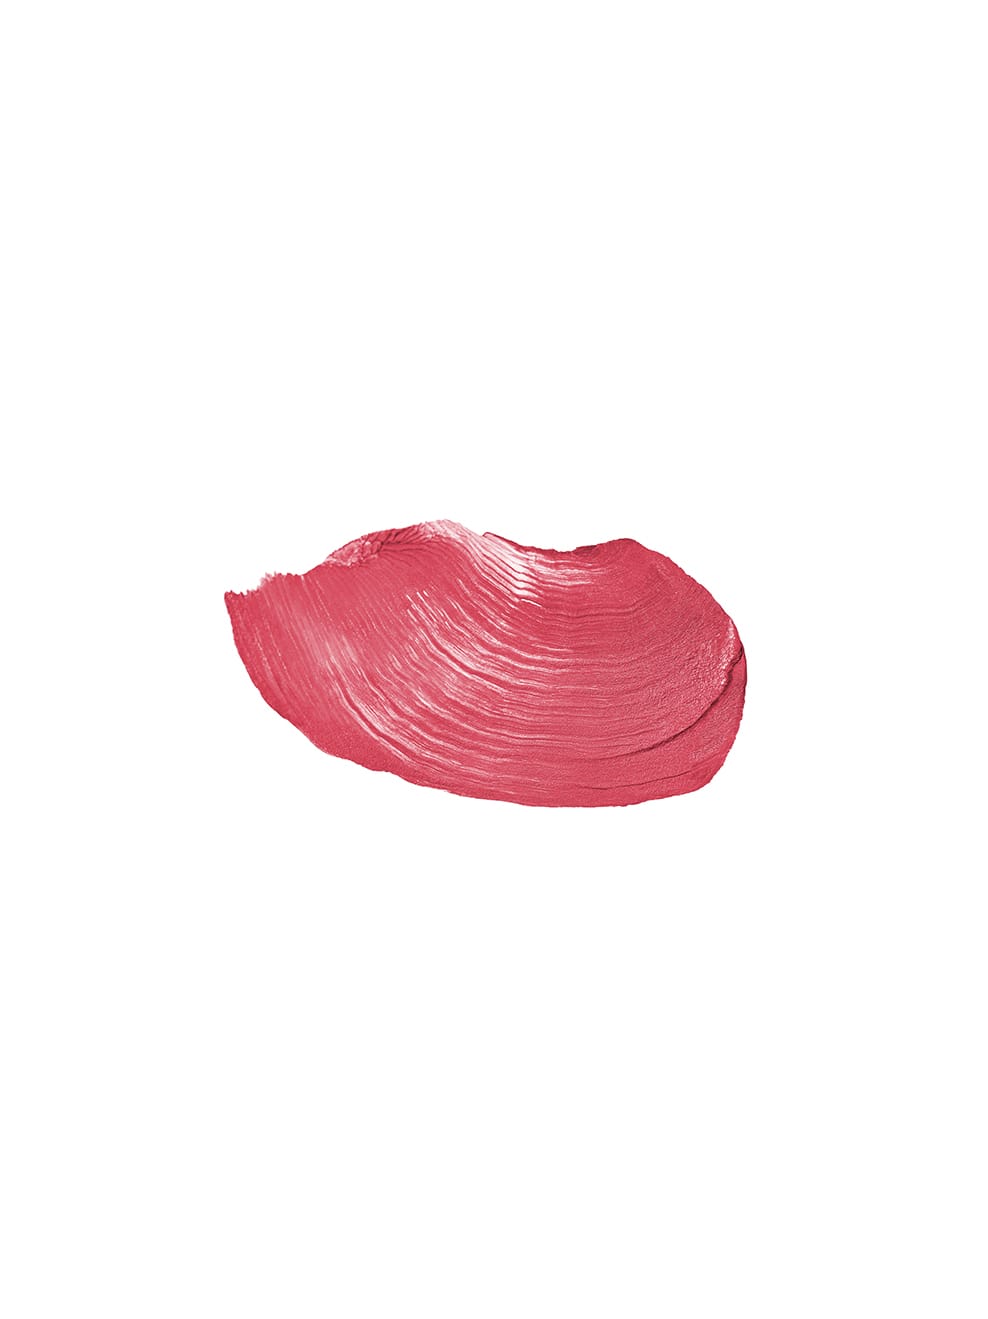 TAGAROT – natürlicher Lippenstift | Lipstick GRETEL Berlin GRETEL UND | UND 